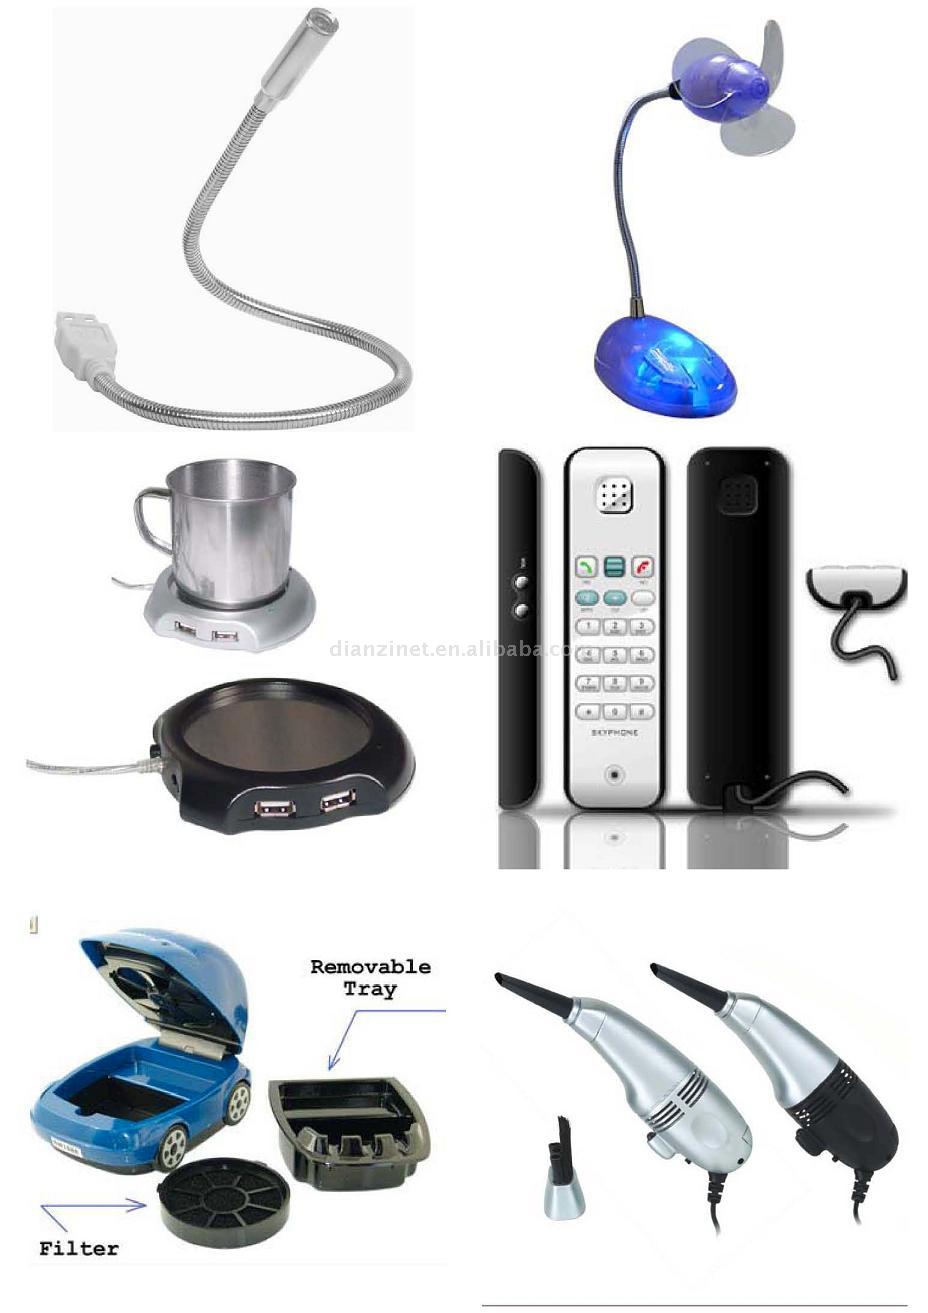 USB Licht / Fan / Cleaner / Tassenwärmer / Skype-Telefon (USB Licht / Fan / Cleaner / Tassenwärmer / Skype-Telefon)